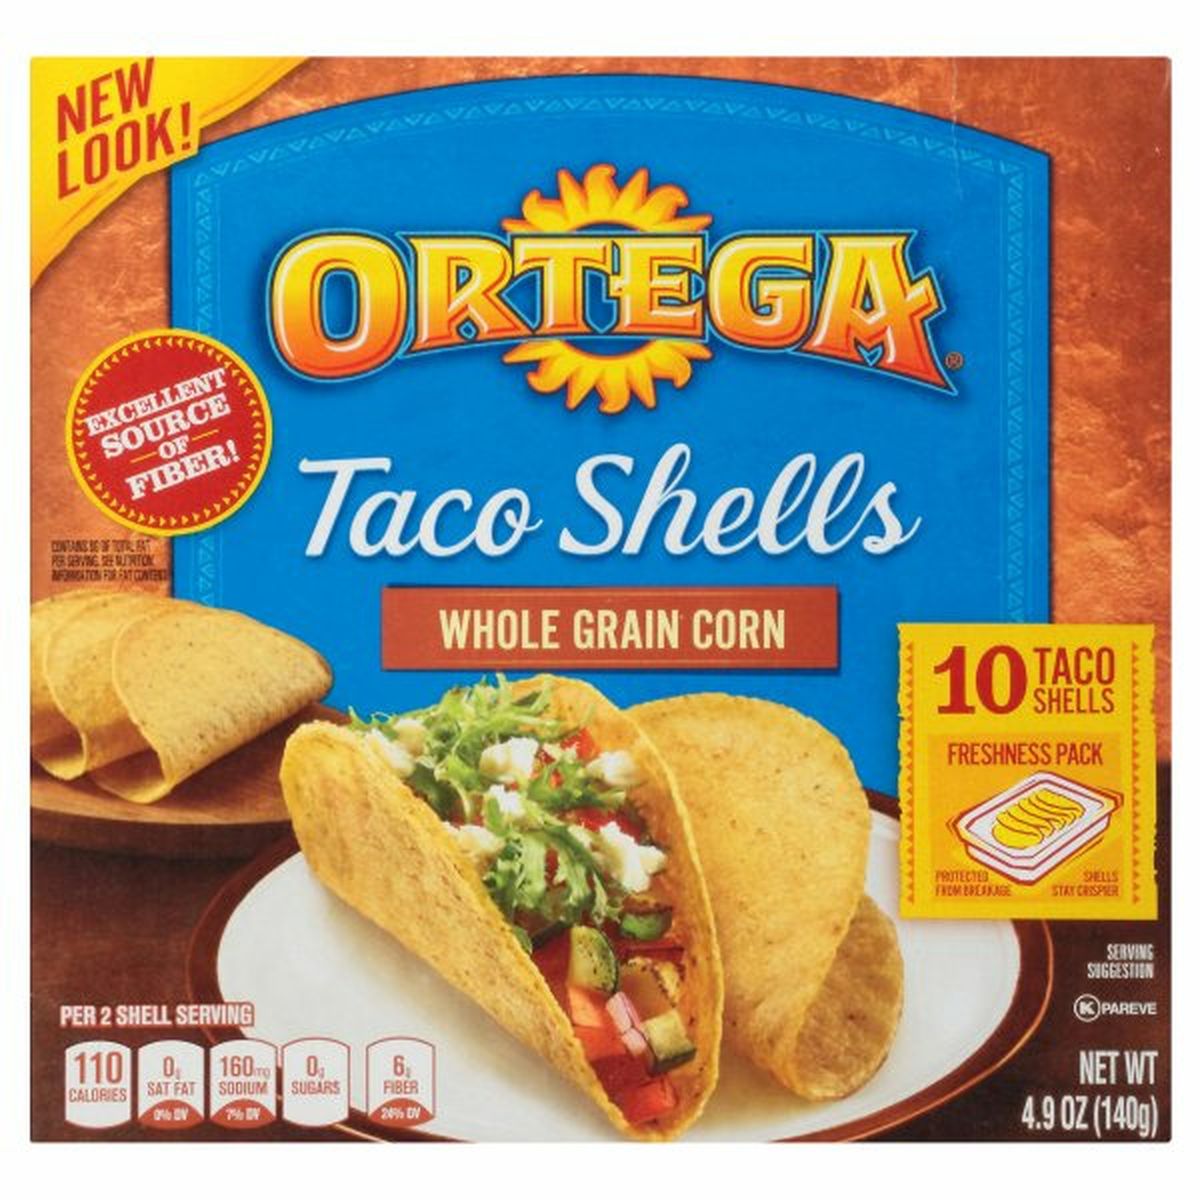 Calories in Ortega Taco Shells, Whole Grain Corn